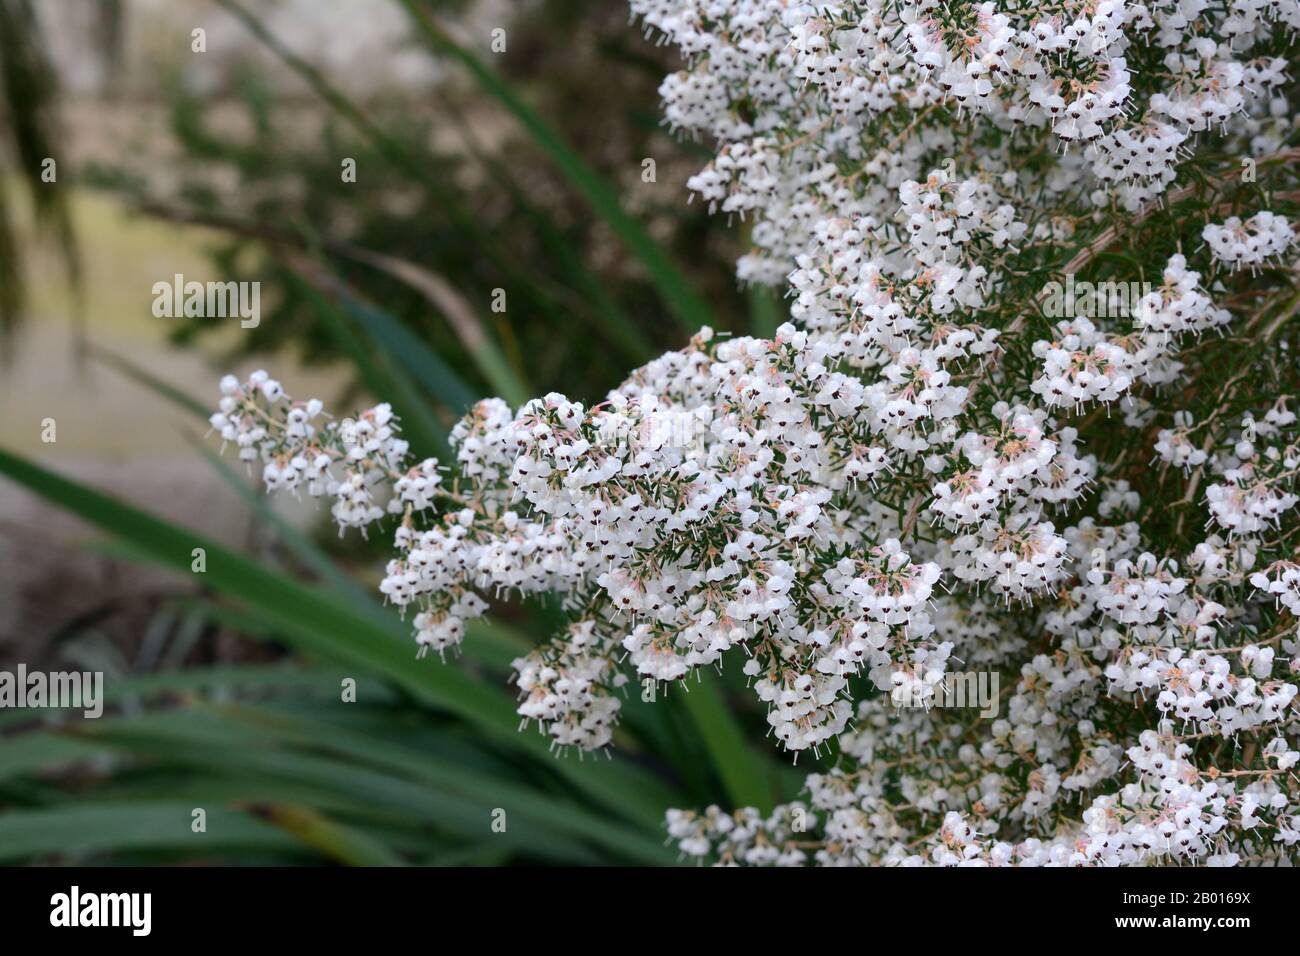 Erica canaliculata Canalizzata heath erica grandi spruzzi di fiori bianchi a forma di campana Foto Stock